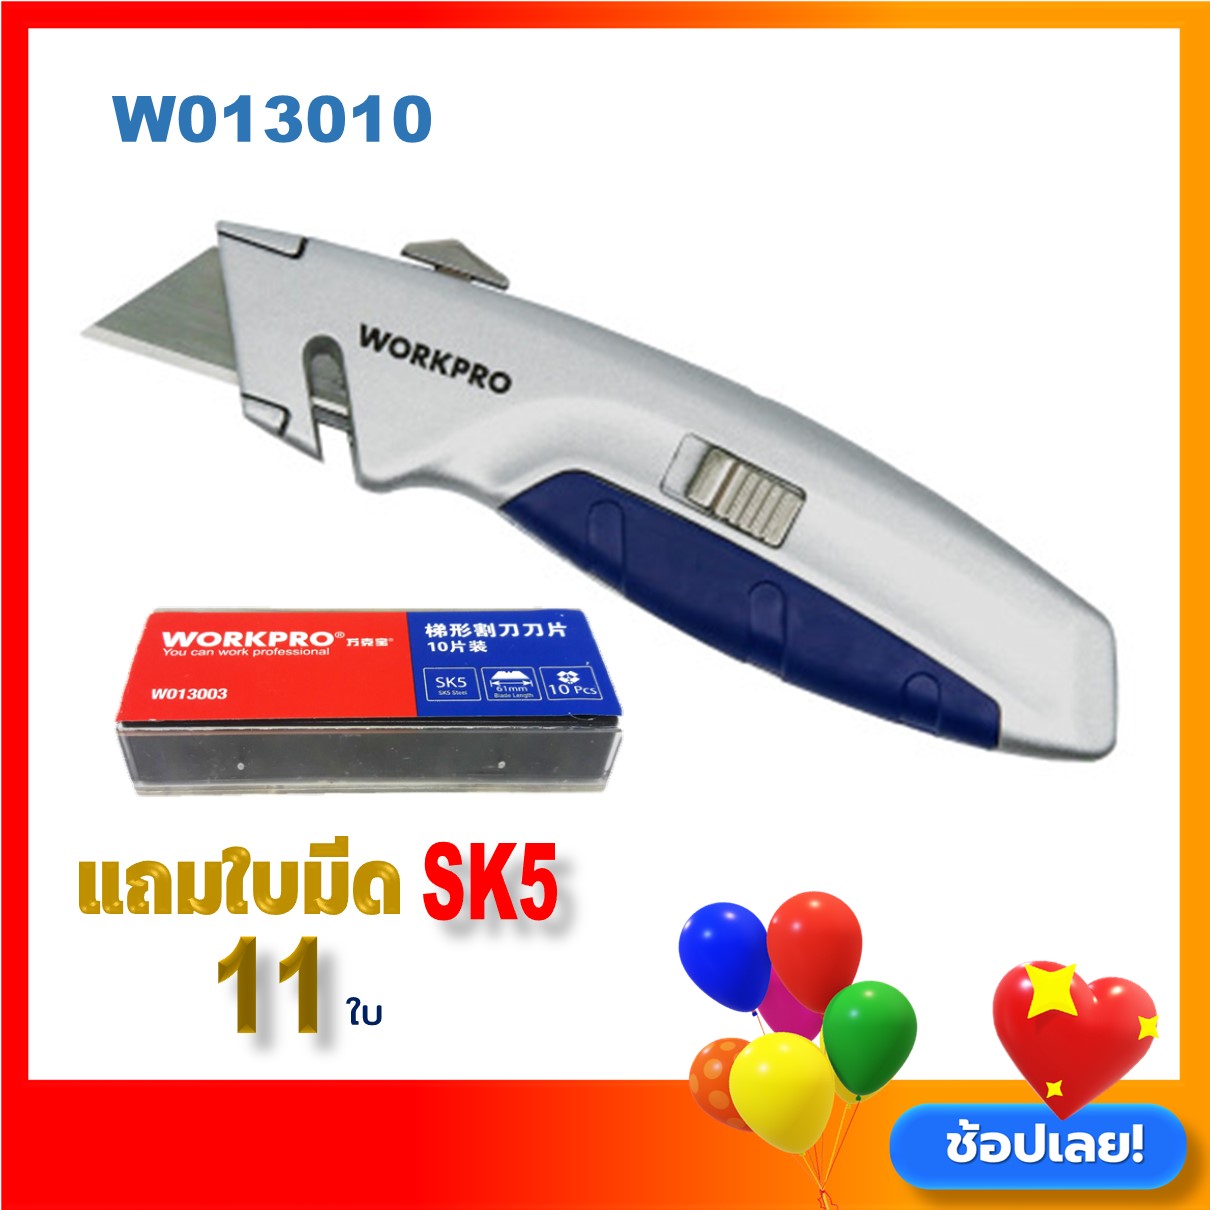 Workpro Utility SK5 Cutter No.W013010 มีดคัตเตอร์SK5 คัตเตอร์อเนกประสงค์ สำหรับงานตัดหนัก แถมใบมีด 11 ใบ